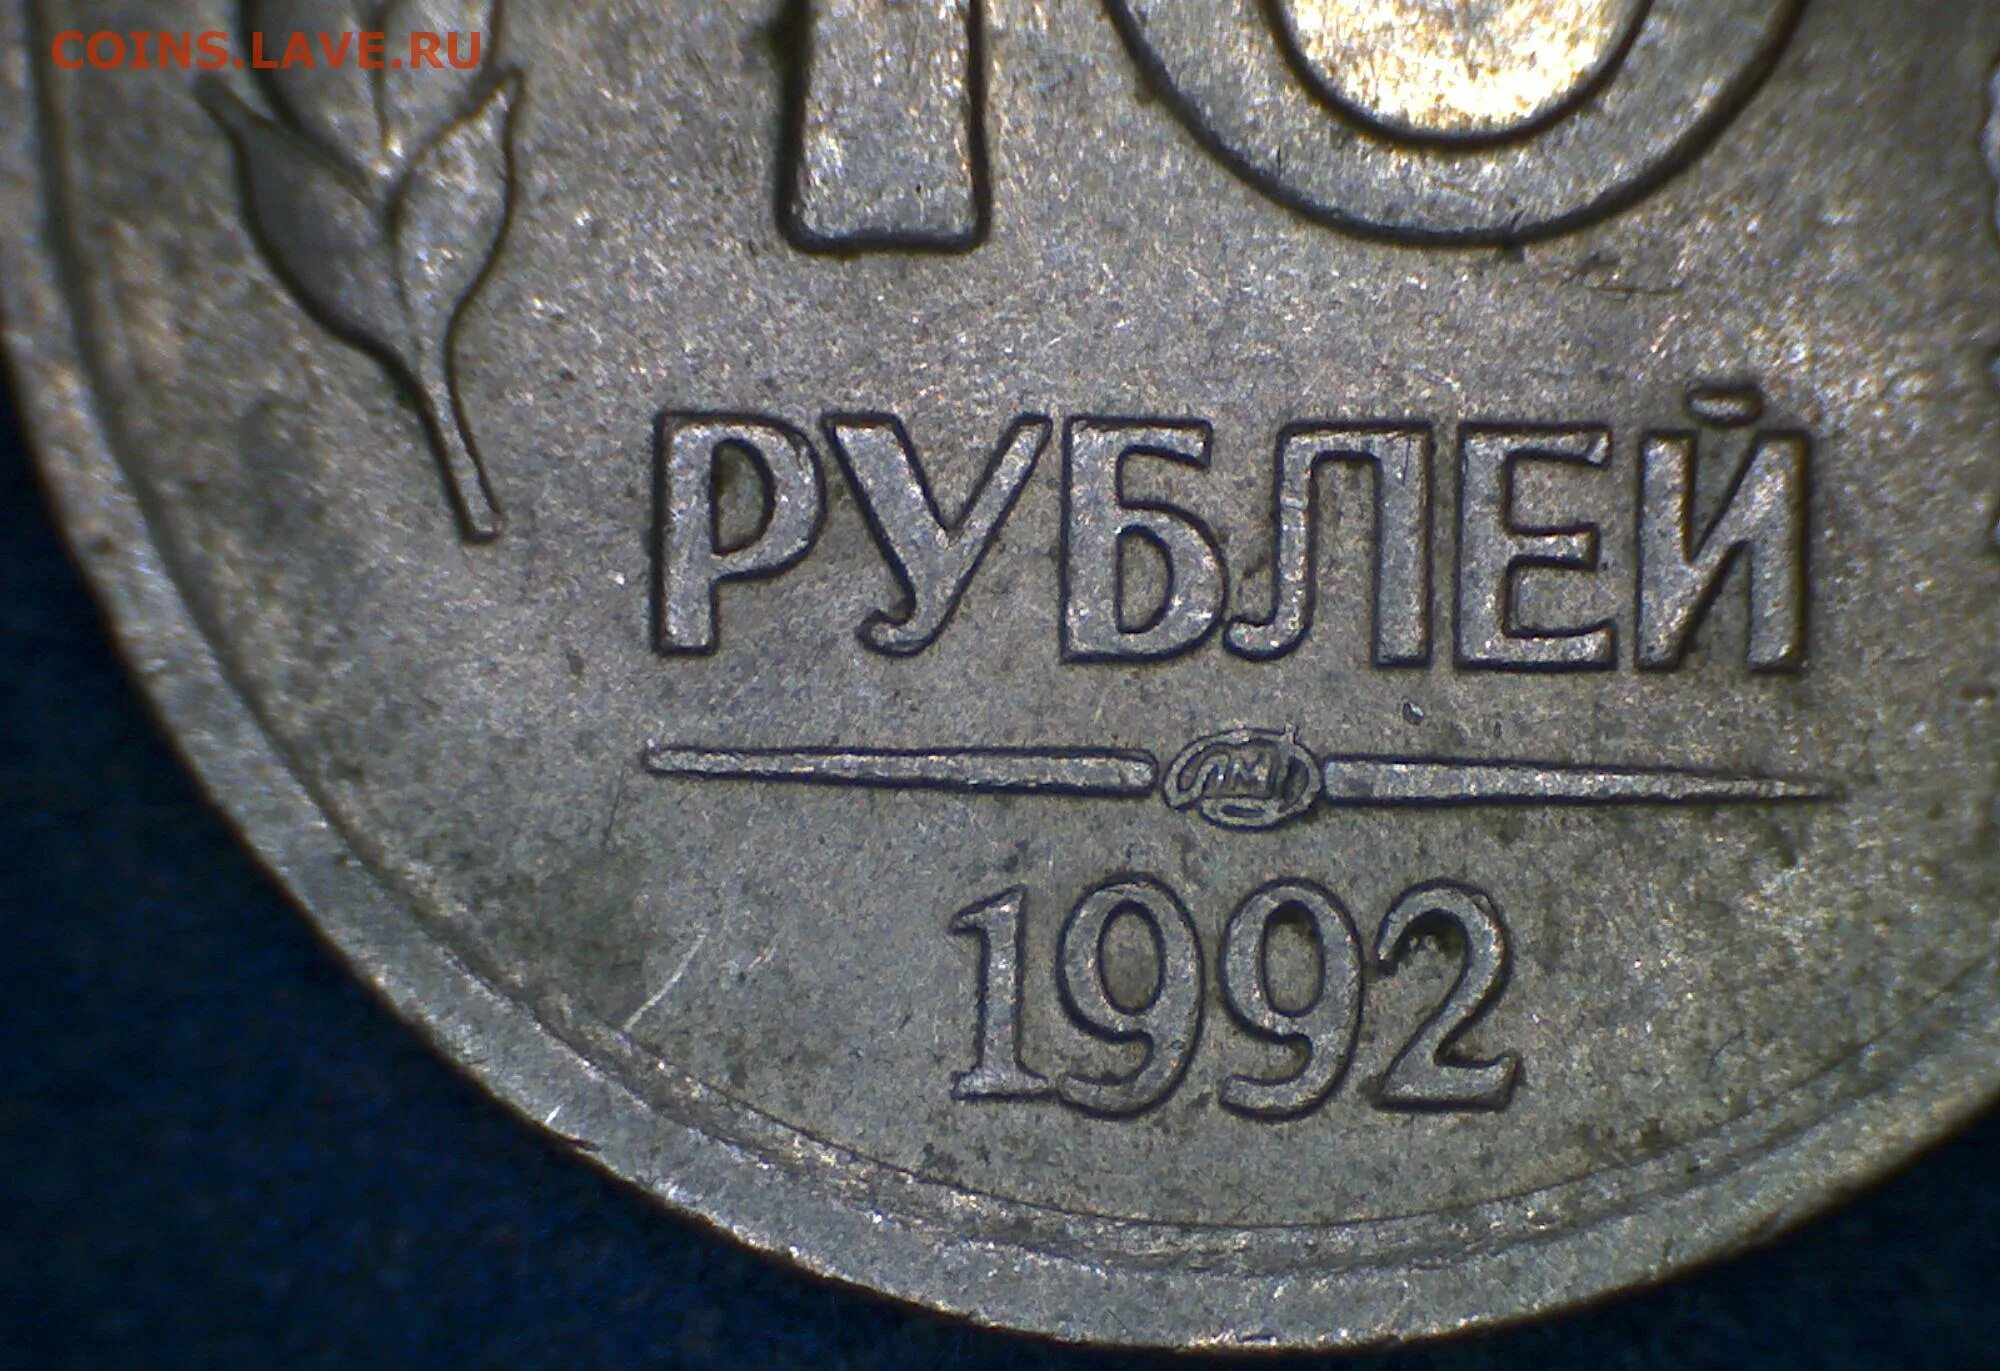 20 рублей 92. 20 Рублей 1992 года. Гурт монеты 20 рублей 1992 года. 20 Рублей СССР. Петербургский монетный двор 1992 год.